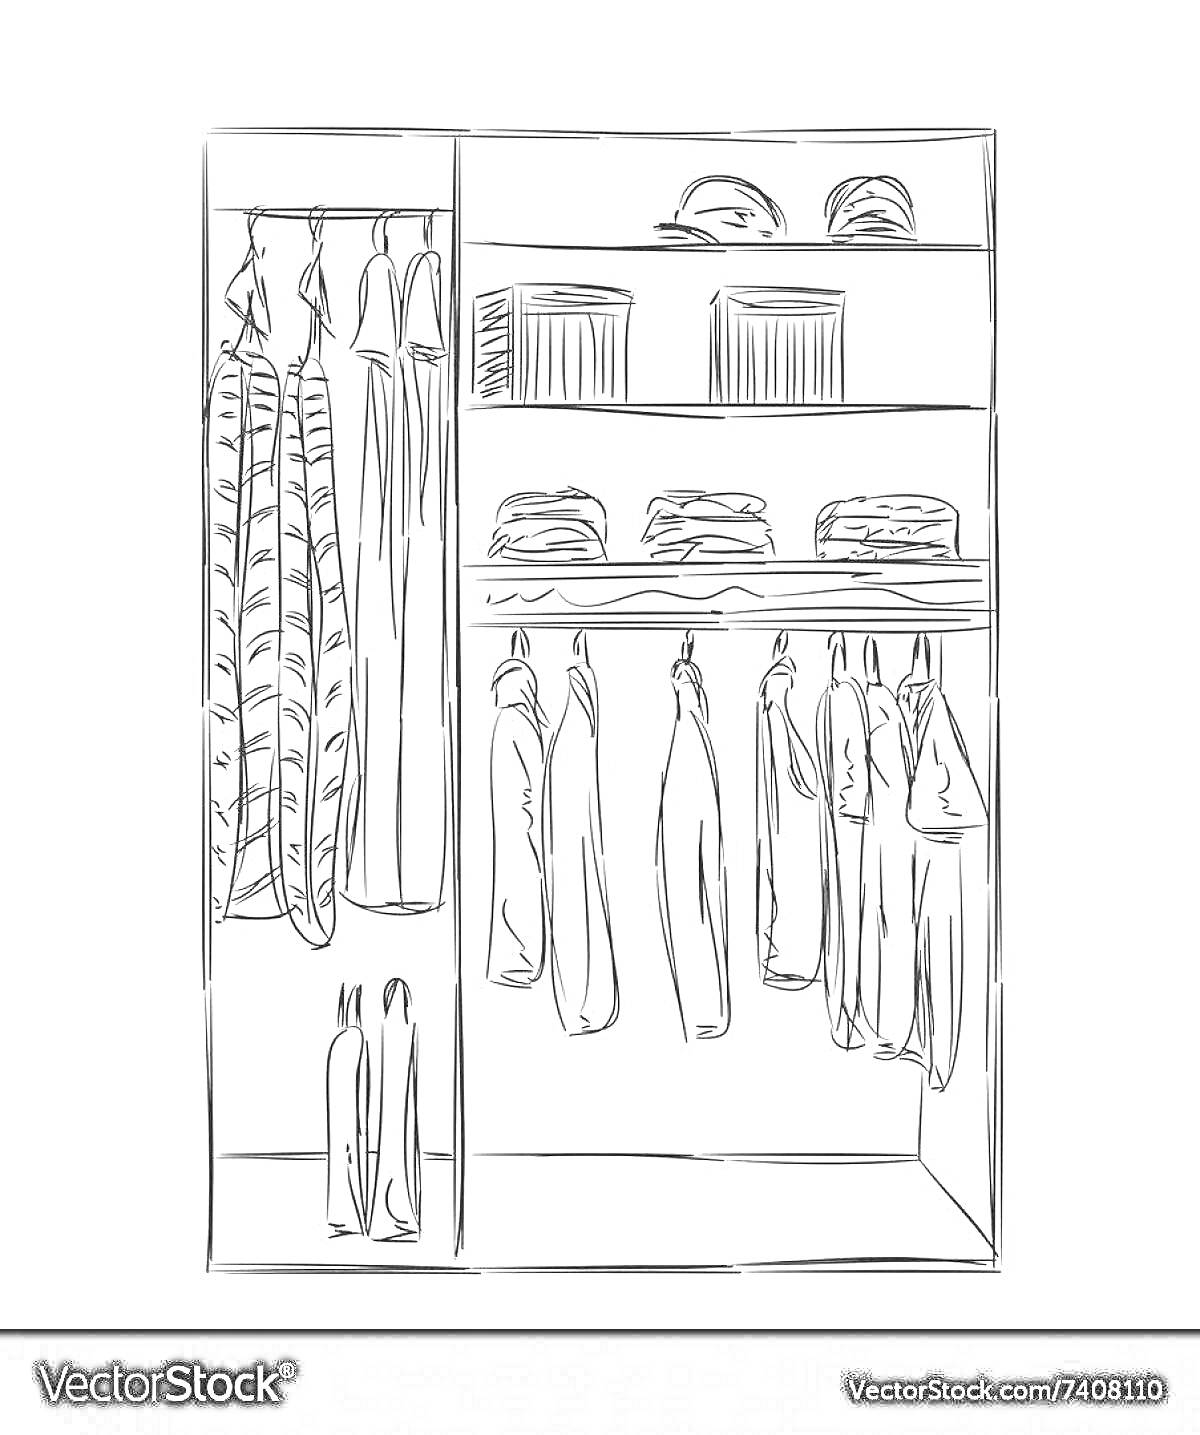 Раскраска Шкаф для одежды с висящими платьями, полками с головными уборами и сложенной одеждой, вешалками с рубашками и брюками, обувью внизу